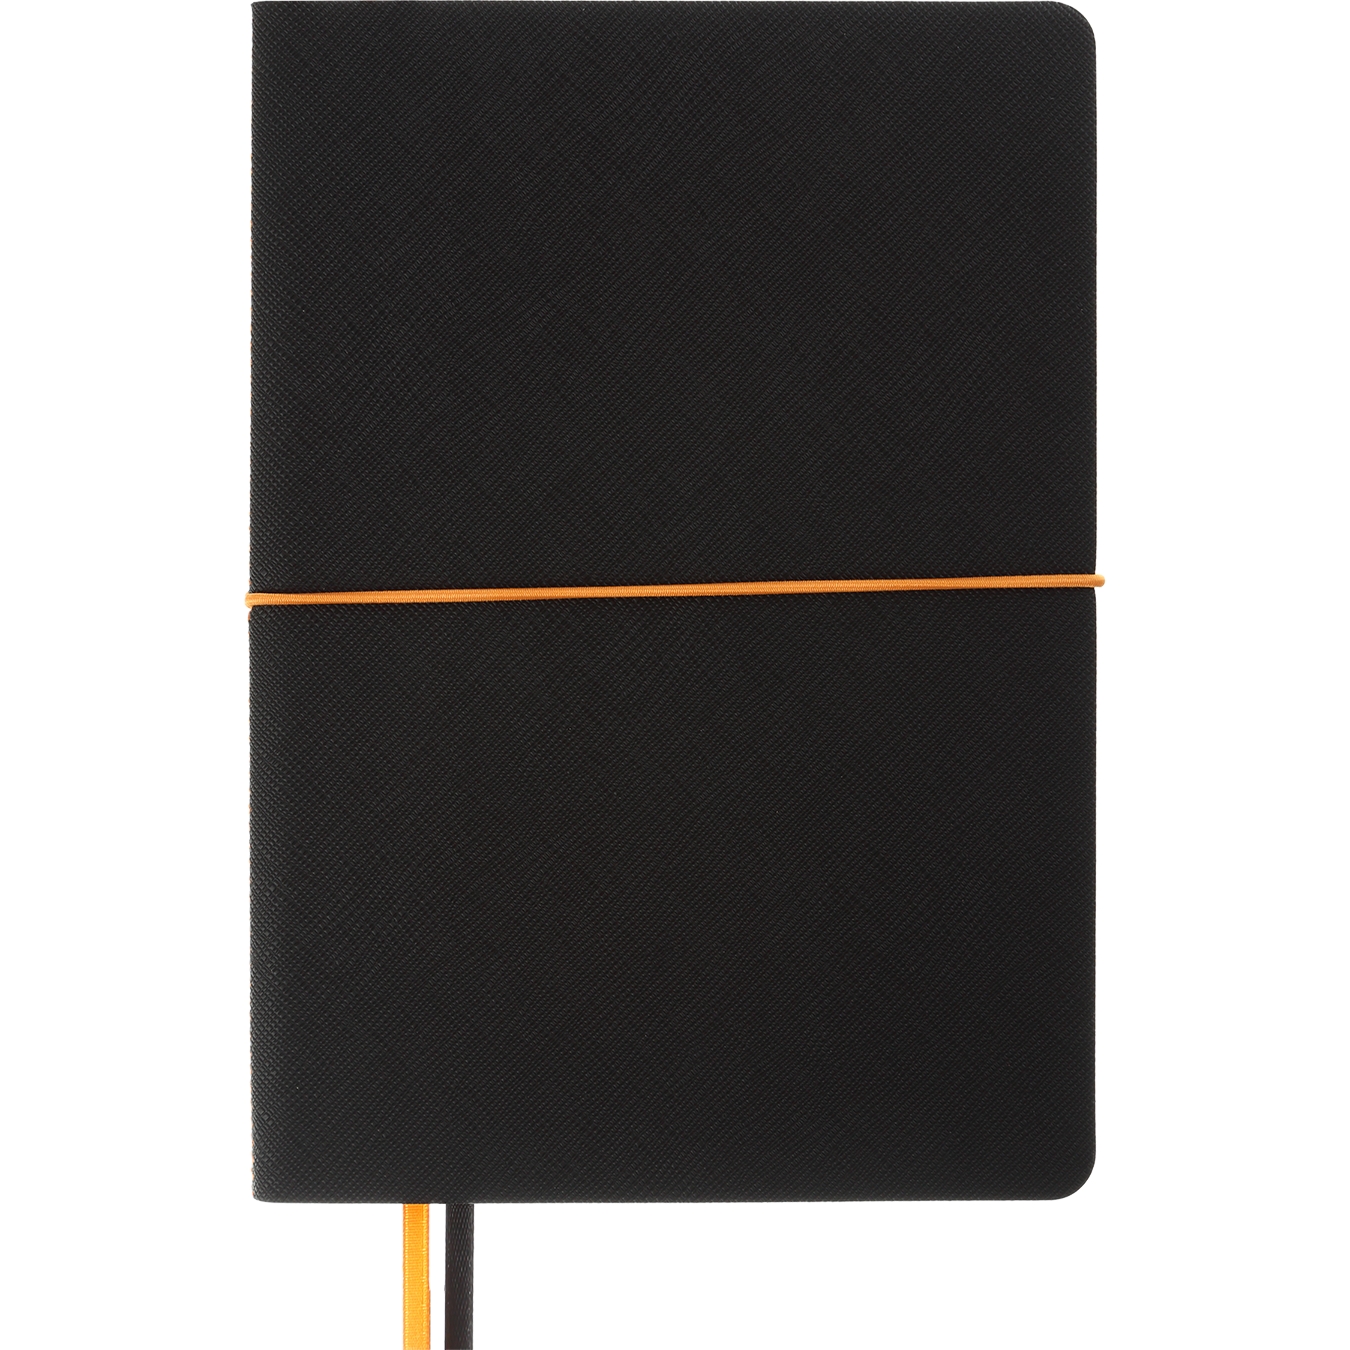 Блокнот деловой Buromax Unique А5 96 л. в клеточку обложка искусственная кожа черный с оранжевым (BM.295107-01) - фото 1